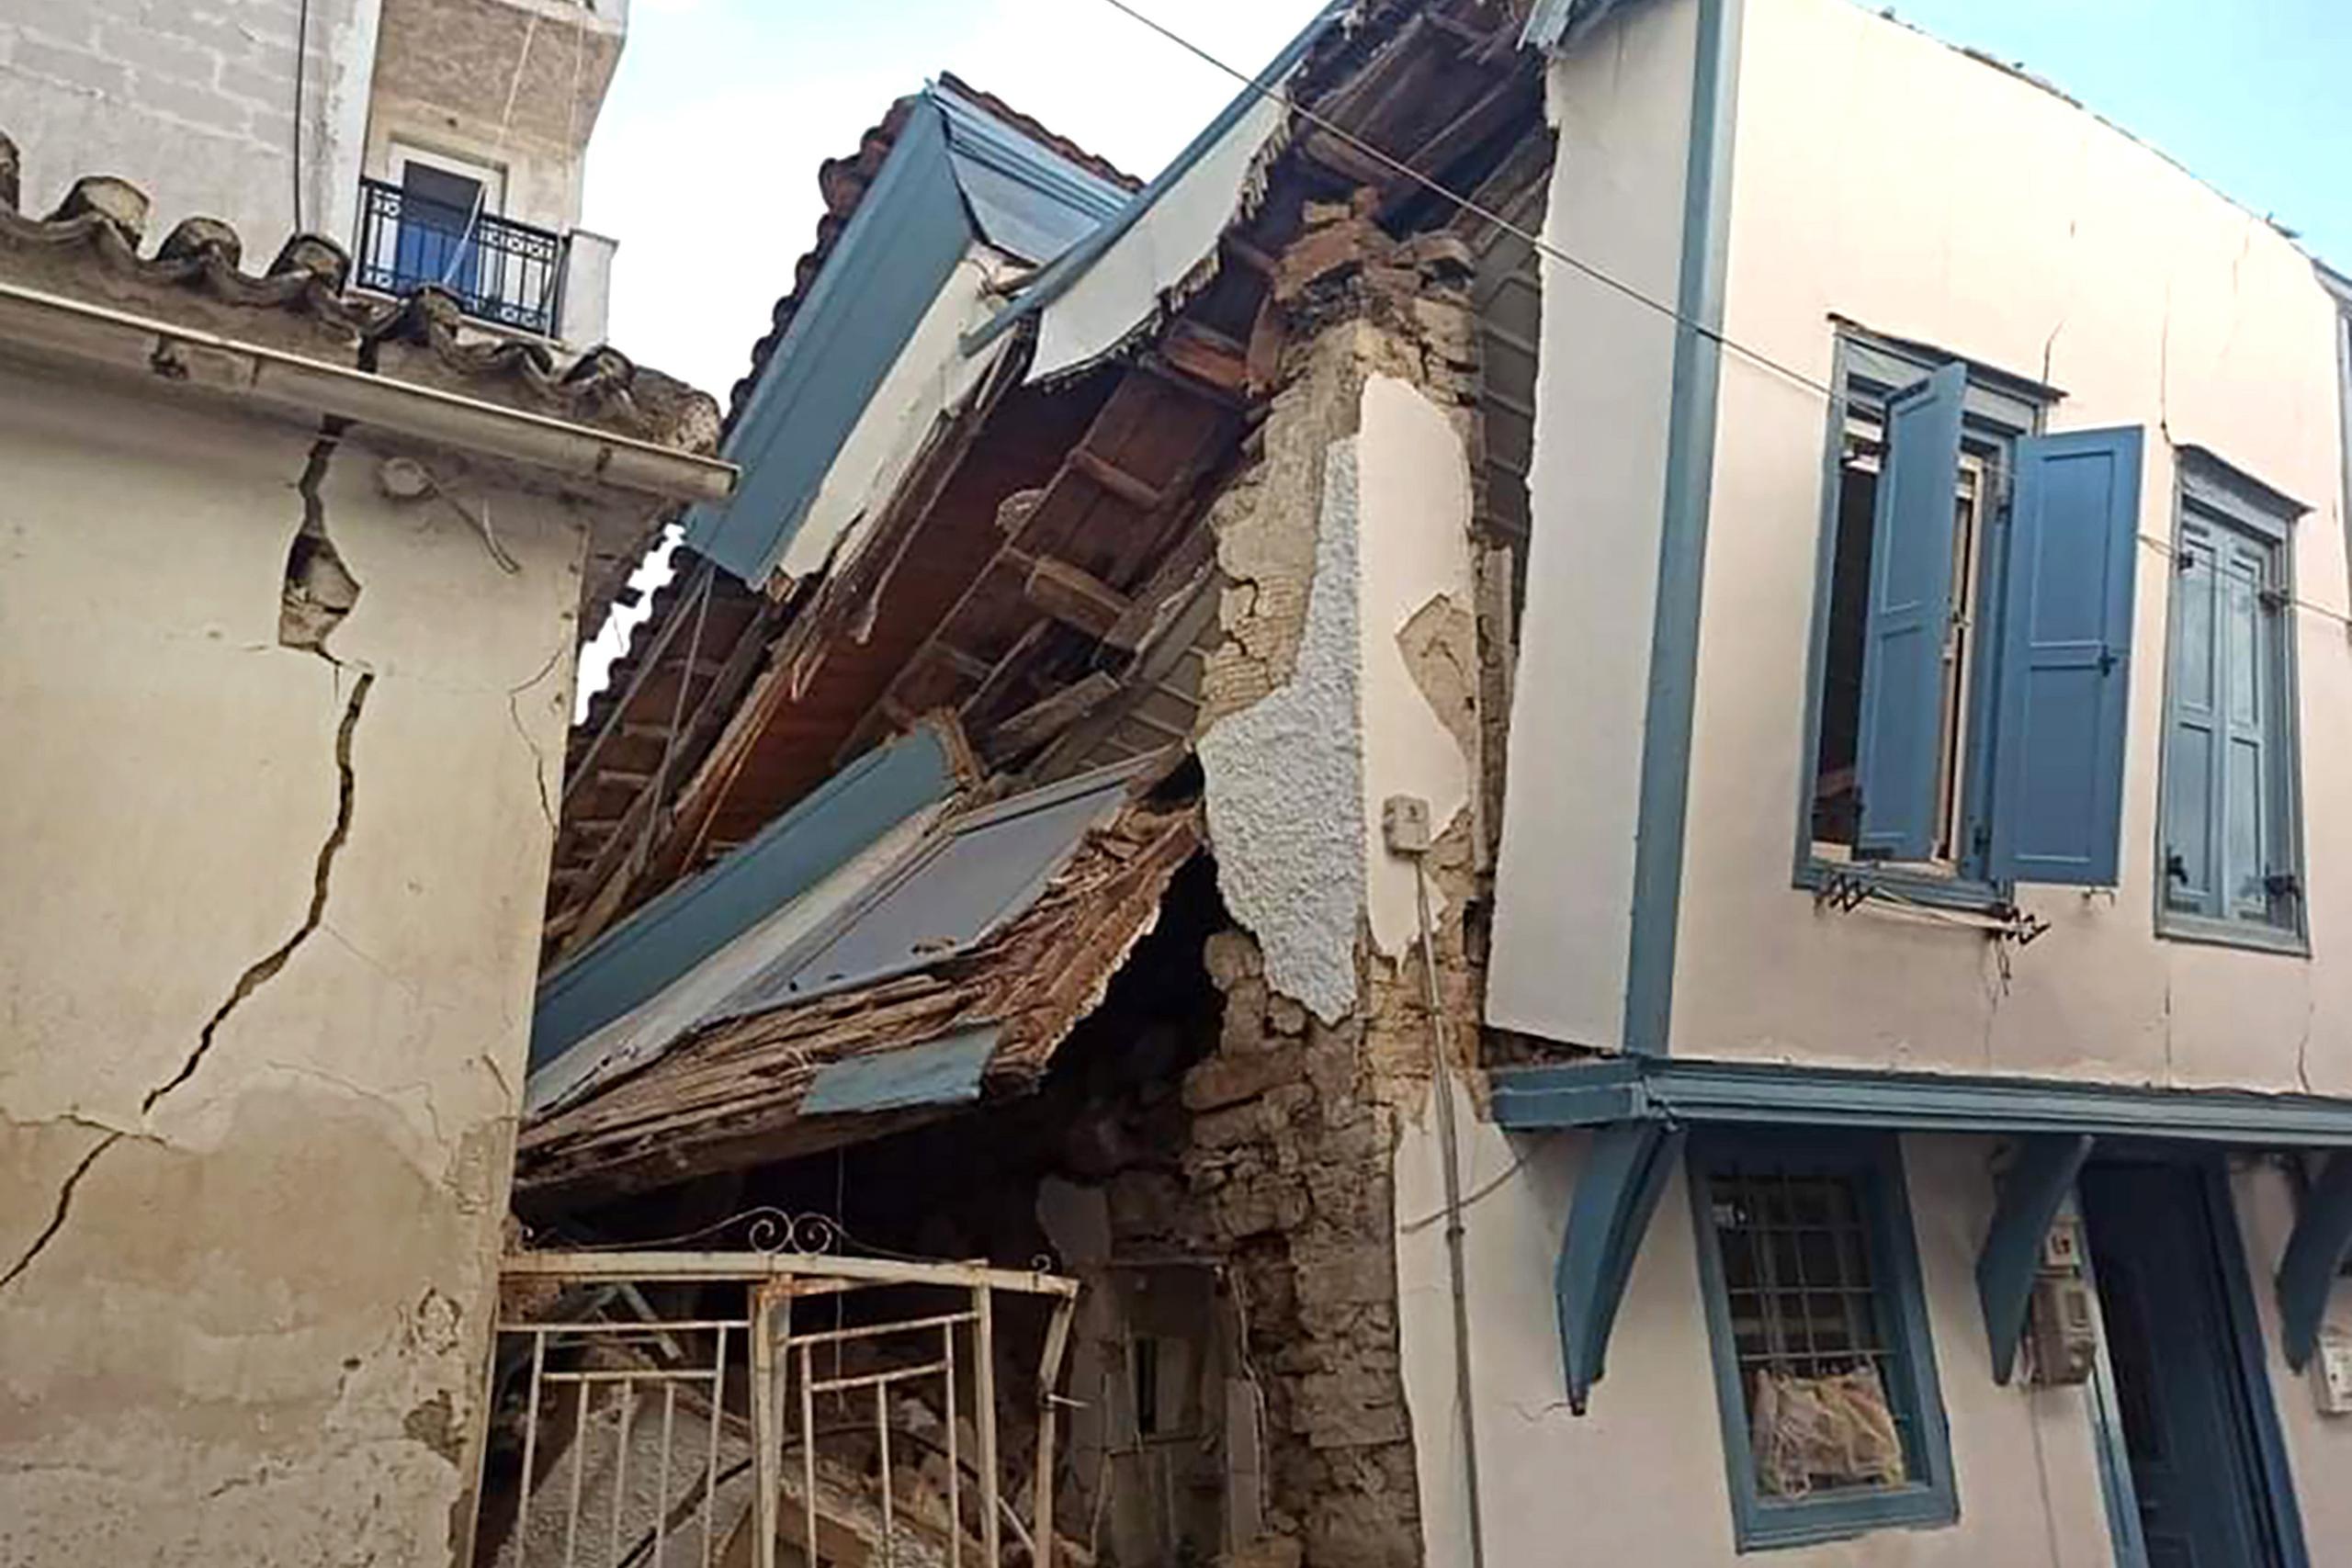 El barrio se asienta precisamente sobre una de las mayores fallas geológicas de la provincia, lo cual ha disparado los efectos del temblor.